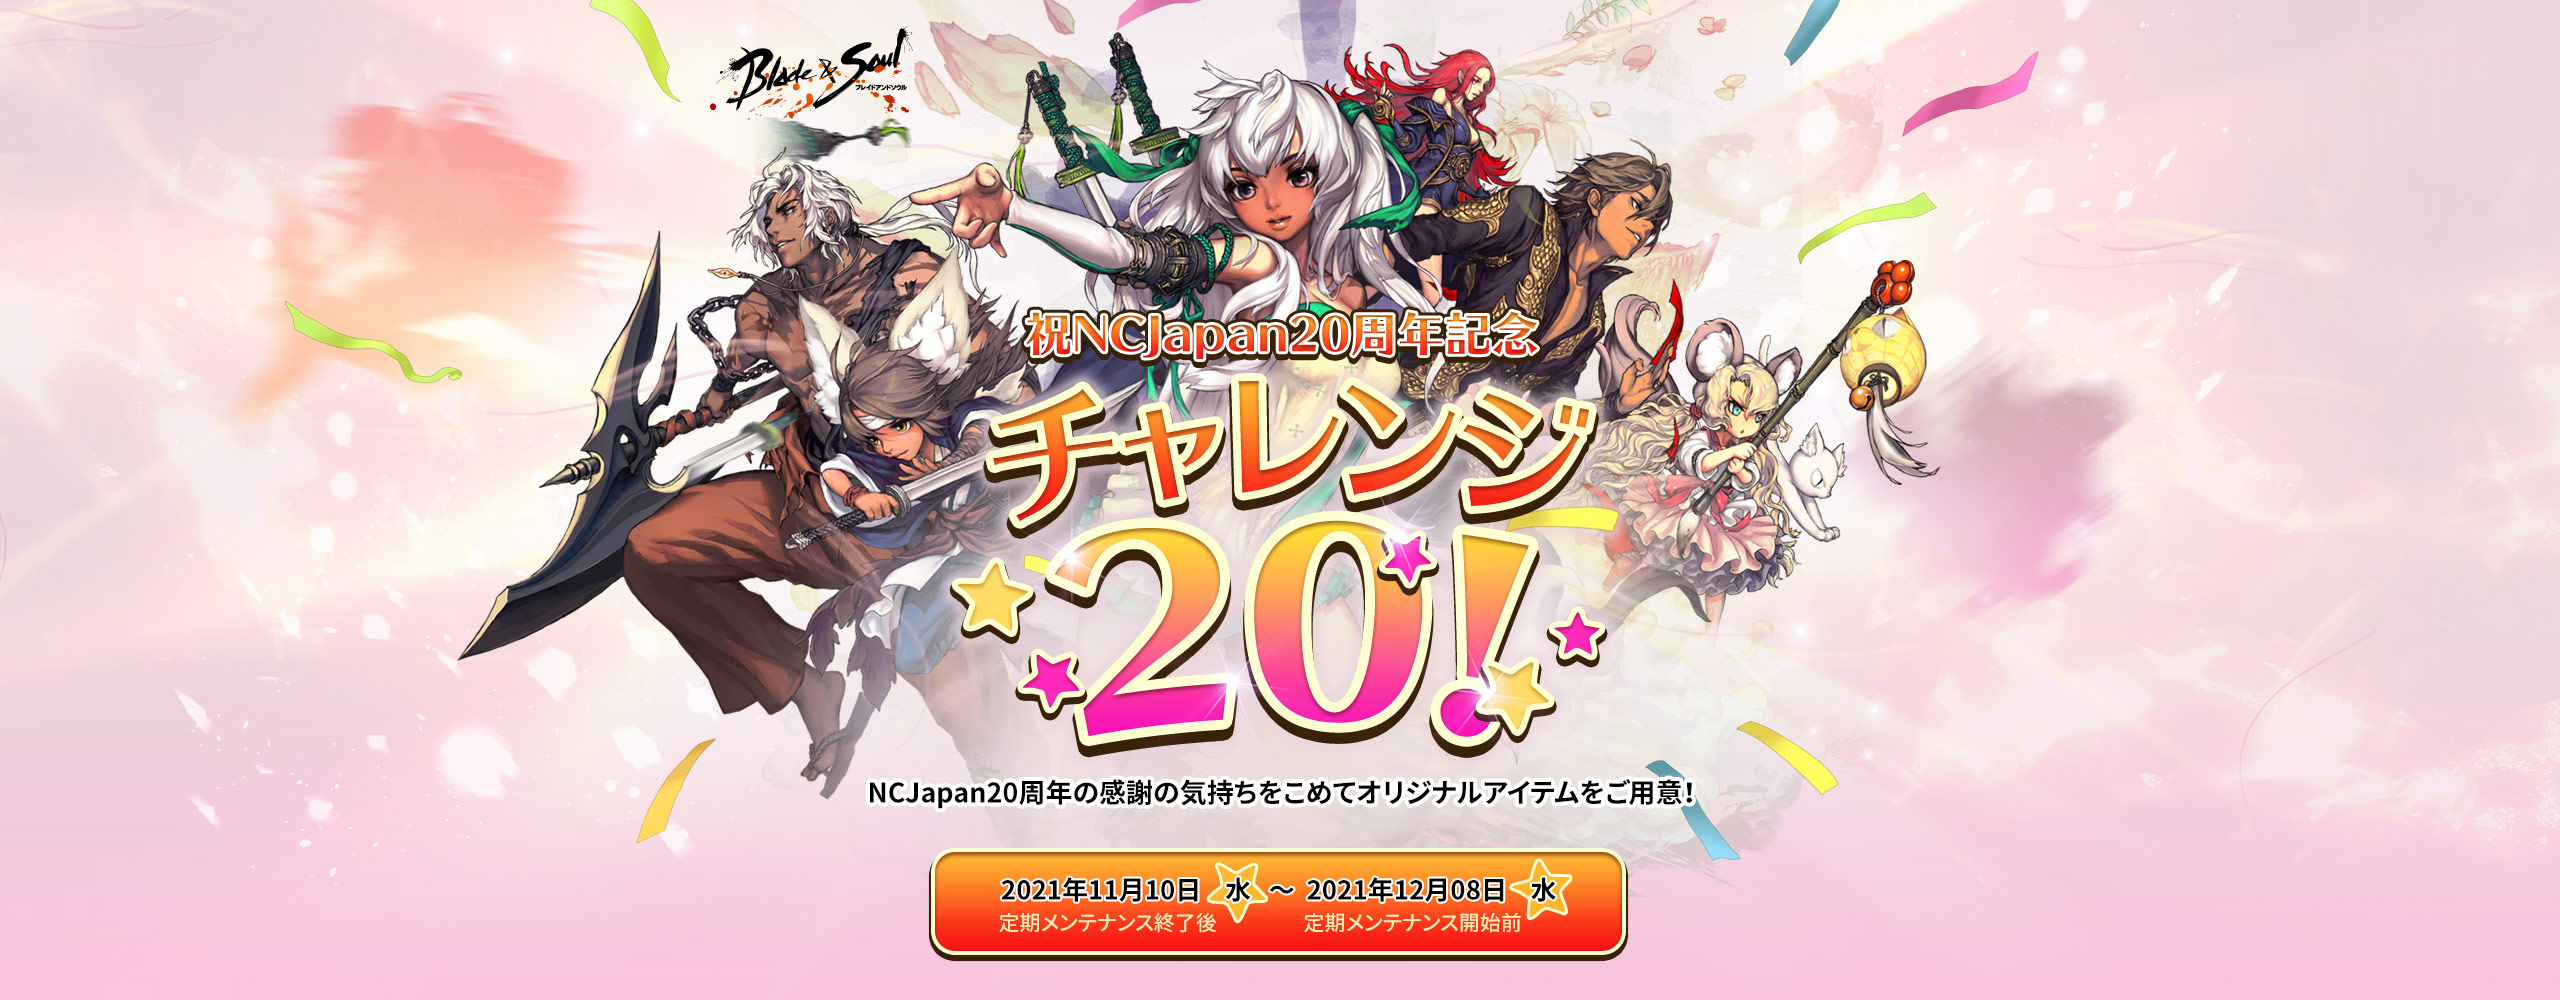 祝NCJapan20周年記念 チャレンジ20!